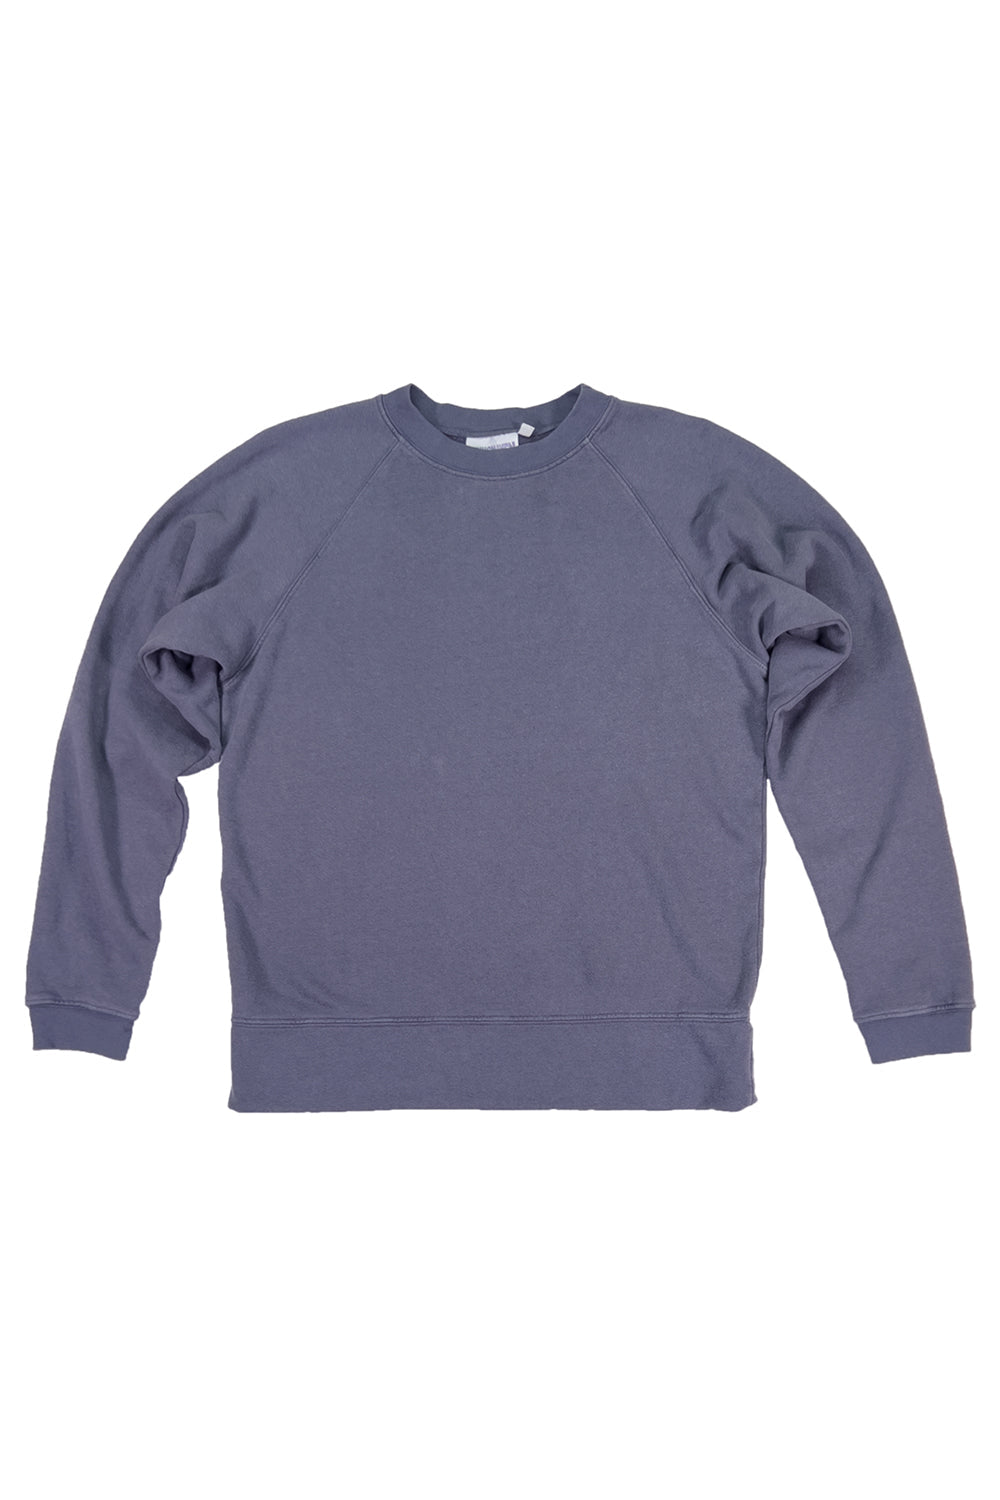 Sierra Raglan Sweatshirt - Diesel Gray